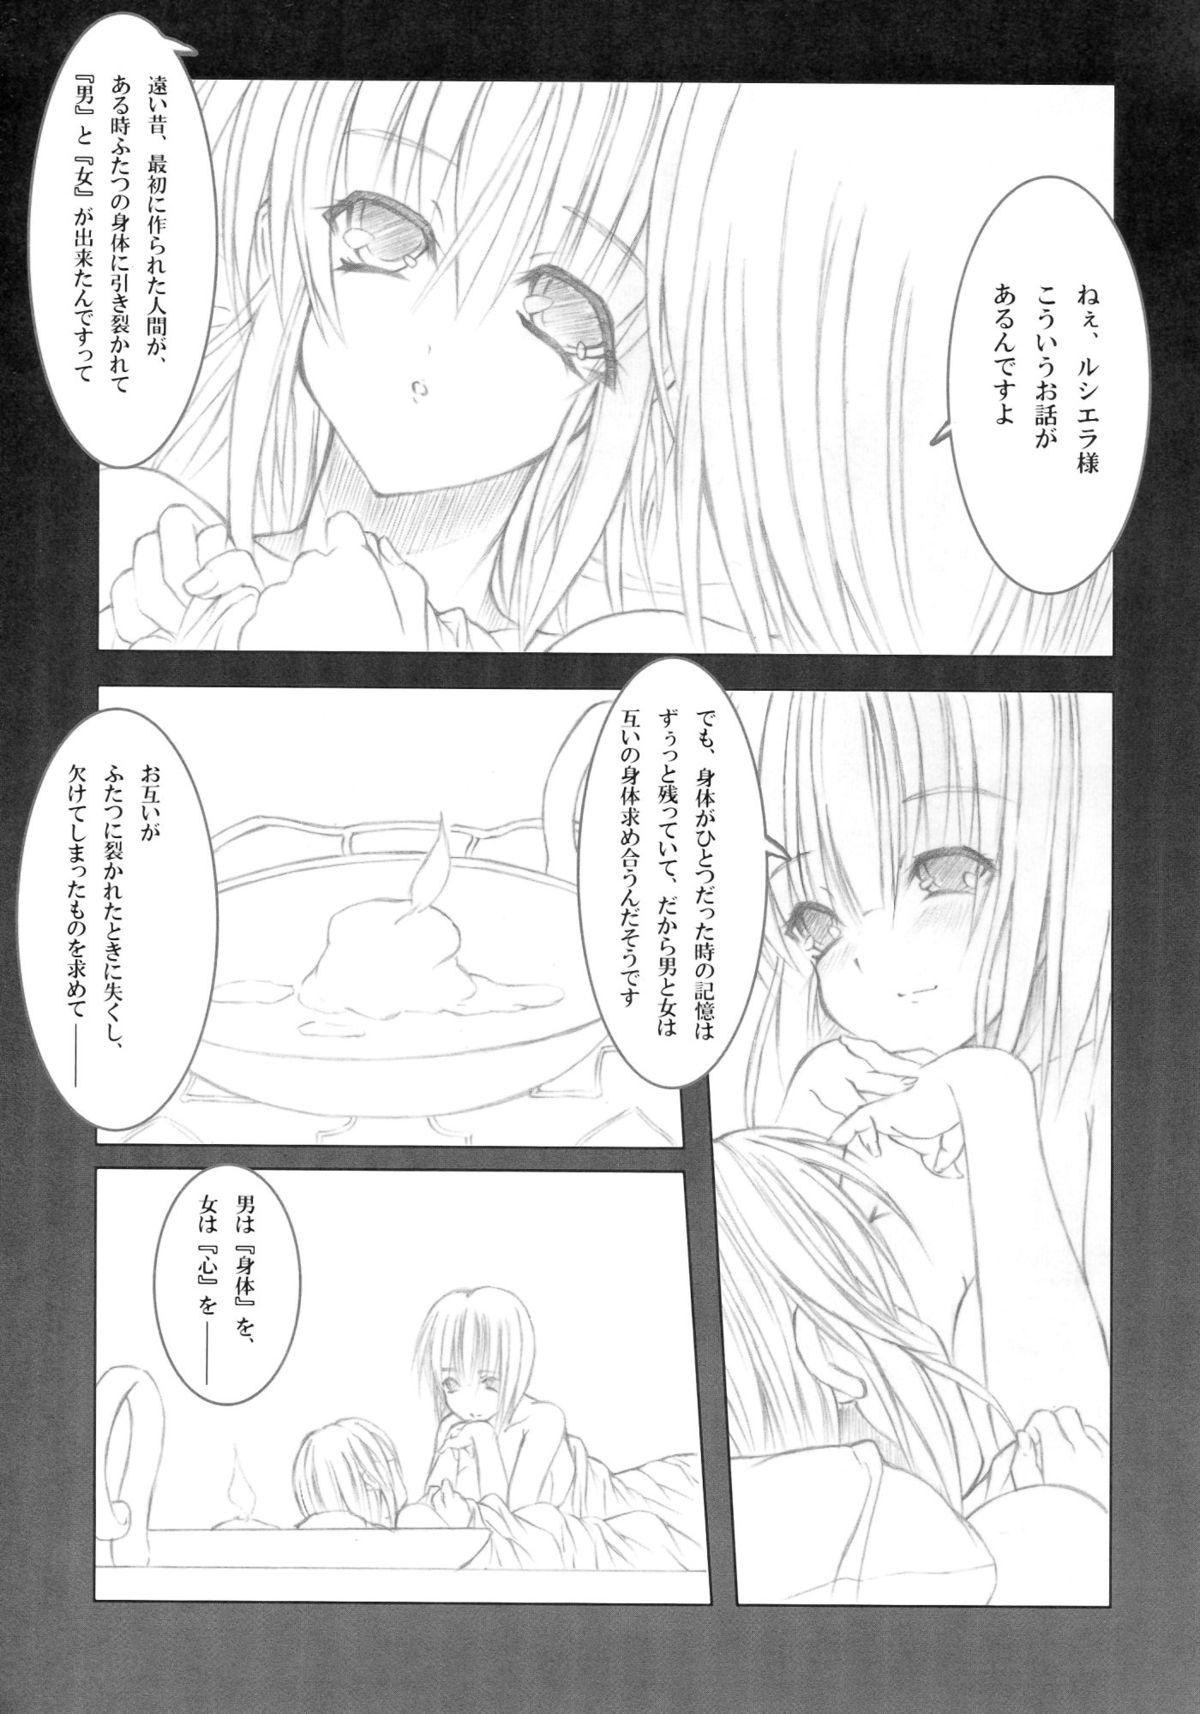 Flashing Koyoi , Gekkou ni Somuku sou Nin Step Sister - Page 5